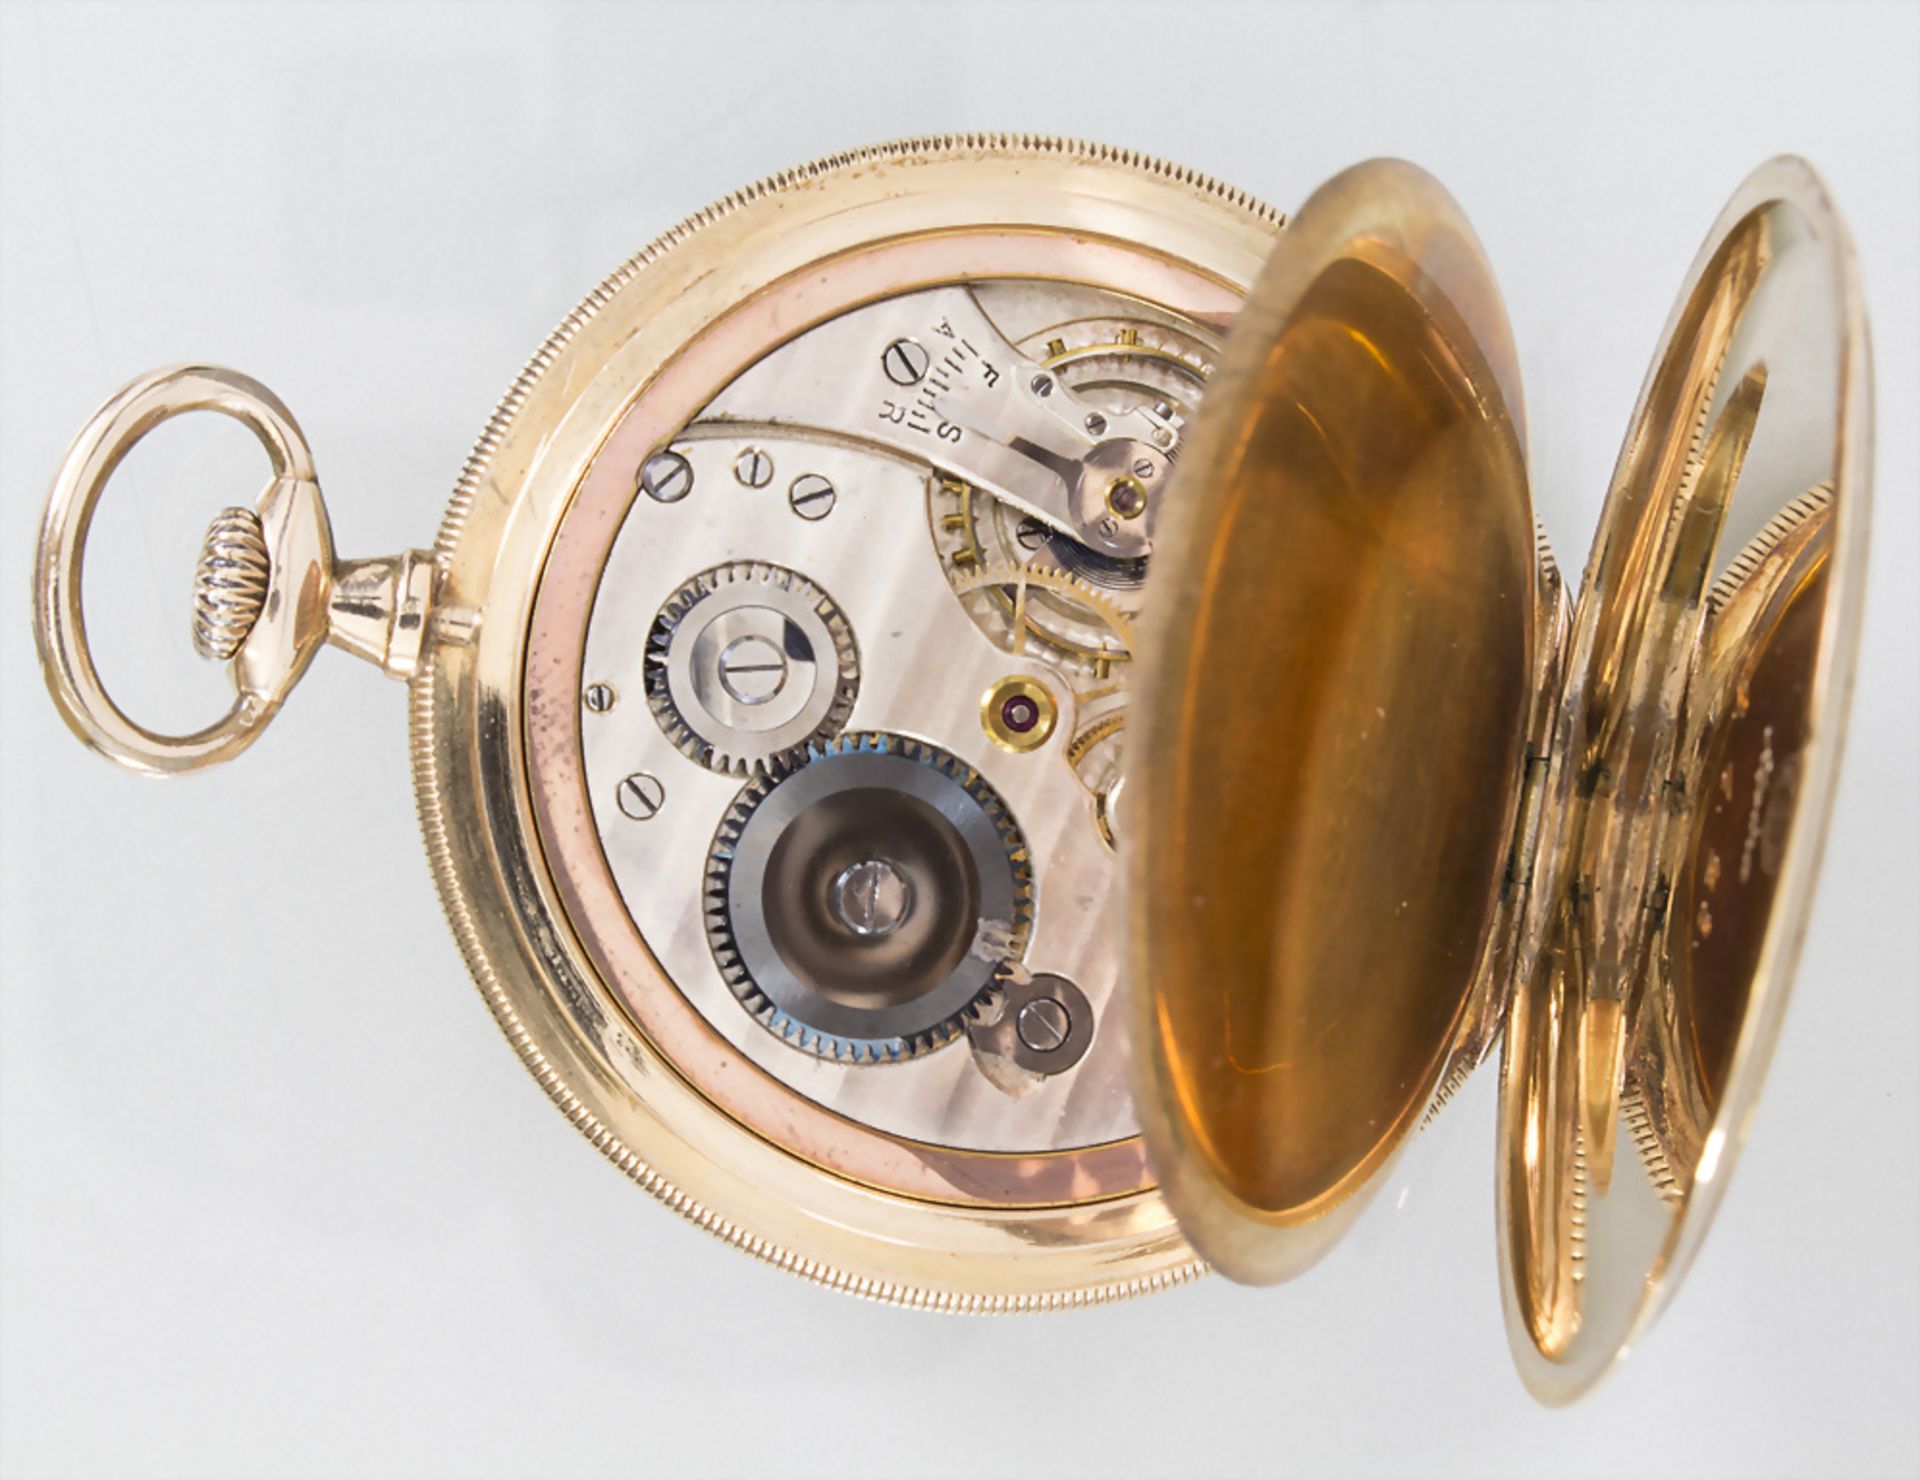 Offene Taschenuhr / A 14 k gold pocket watch, Alpina, deutsch, um 1928 - Image 3 of 5